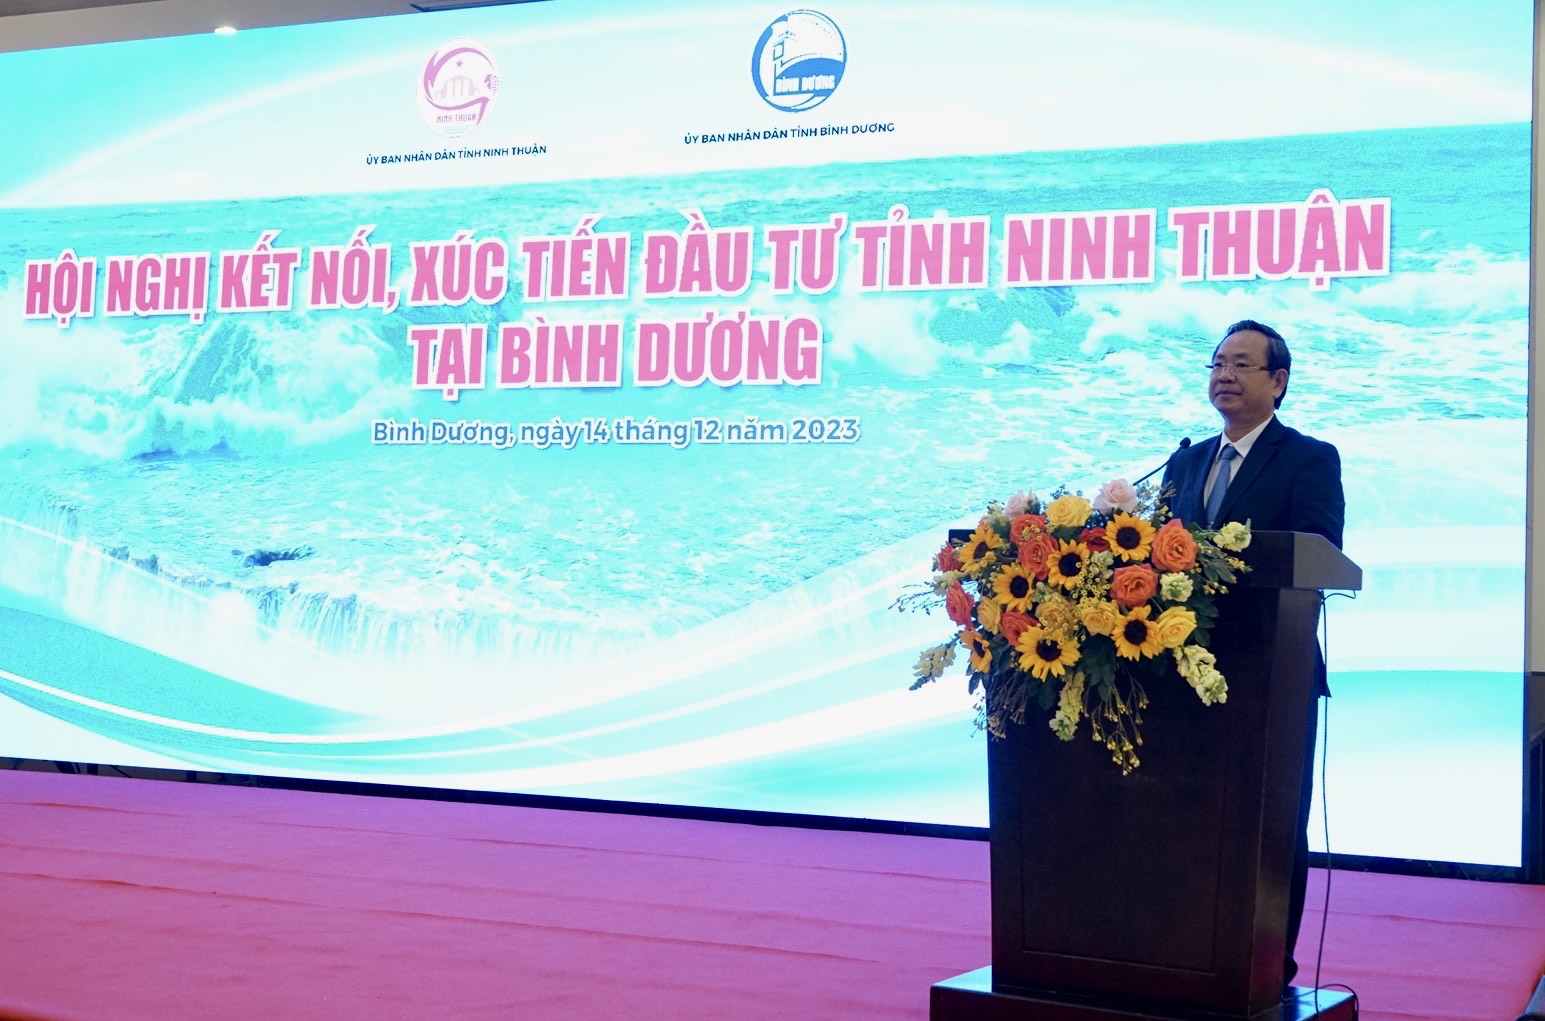 Ông Nguyễn Văn Dành, Phó Chủ tịch UBND tỉnh Bình Dương